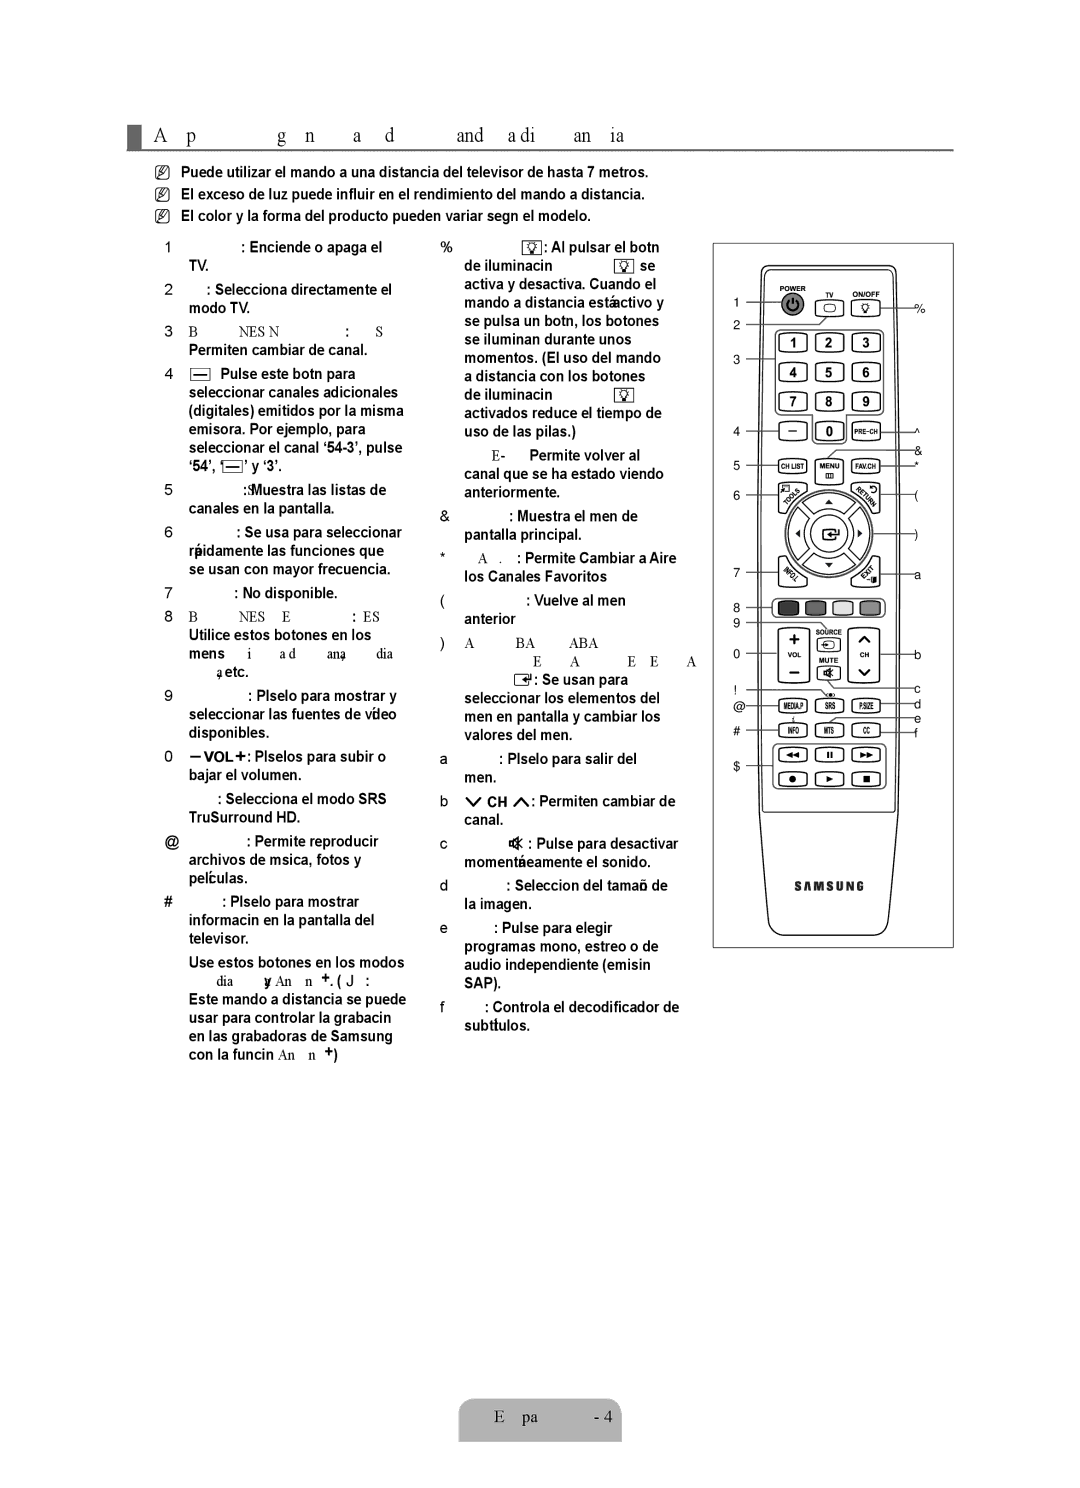 Samsung Series L6 user manual Aspecto general del mando a distancia, CH List Muestra las listas de canales en la pantalla 